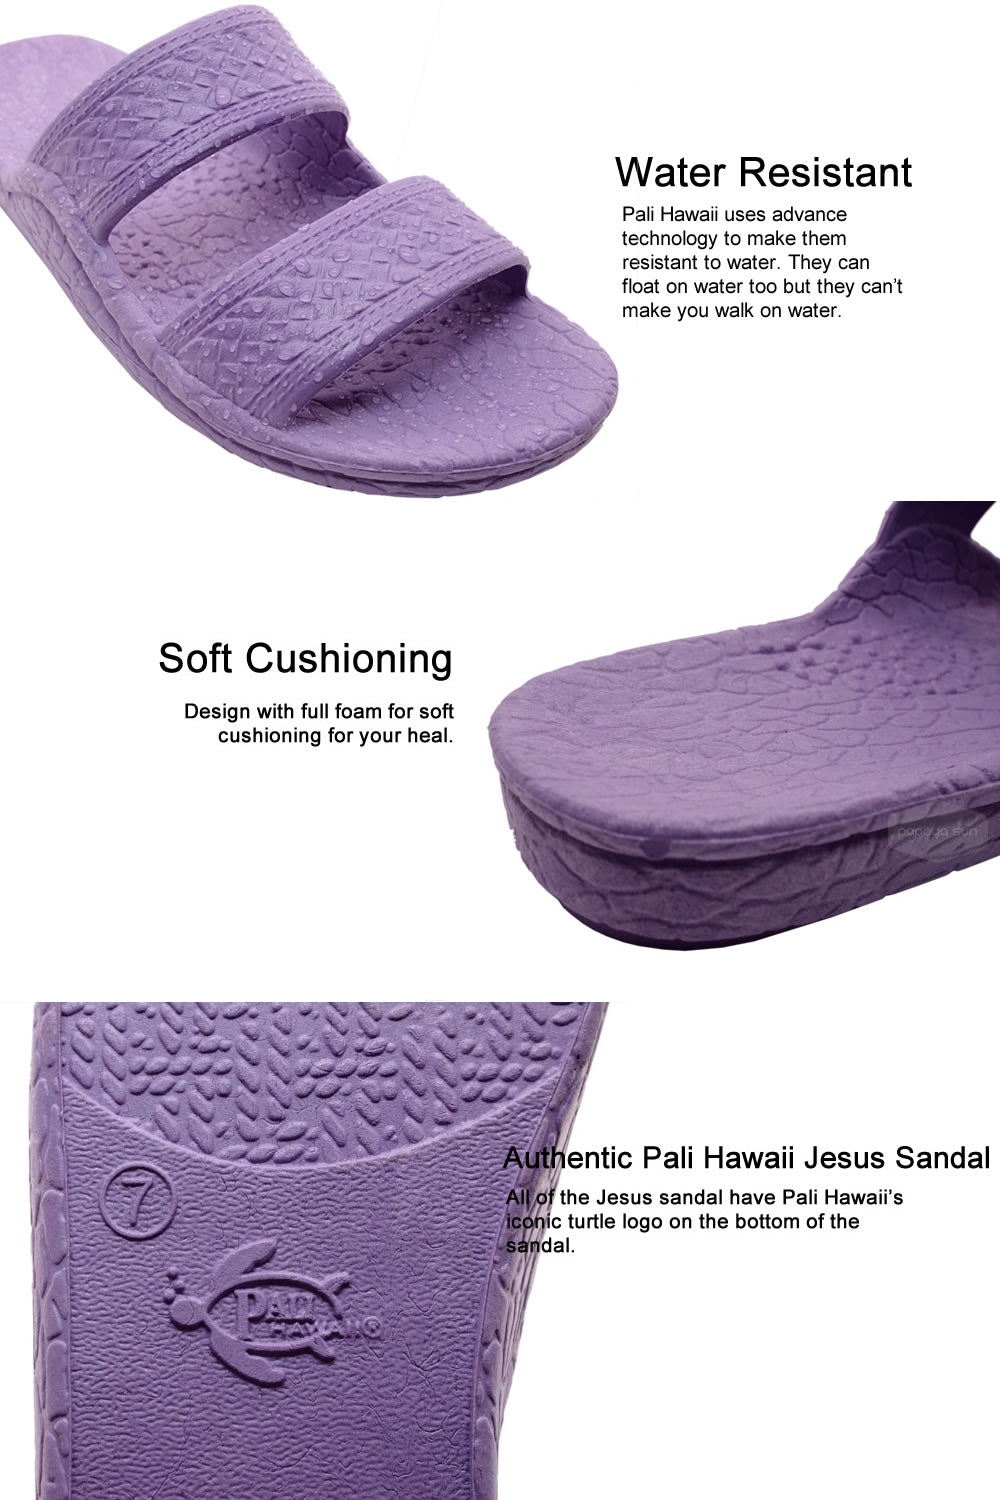 jesus sandal features